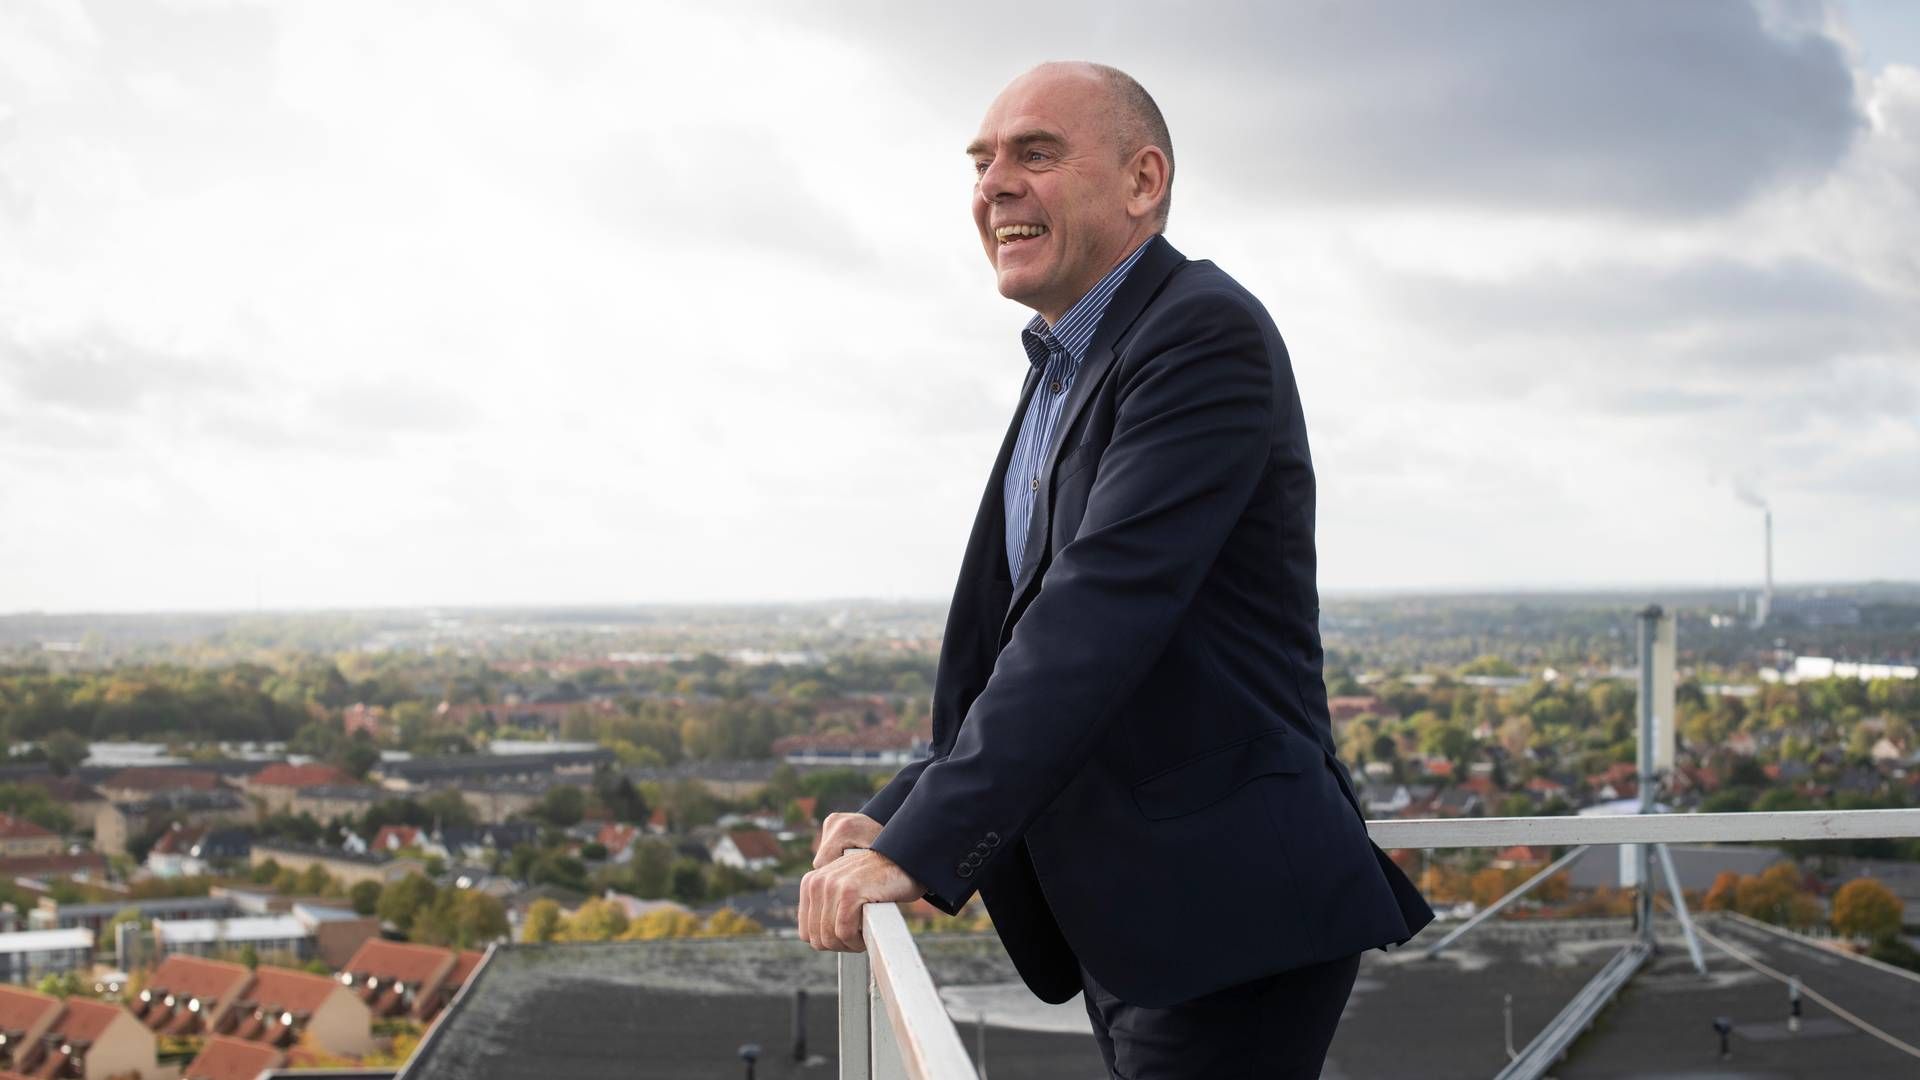 Knud Erik Andersen is open to an IPO. | Photo: Gregers Tycho/Ritzau/Ritzau Scanpix